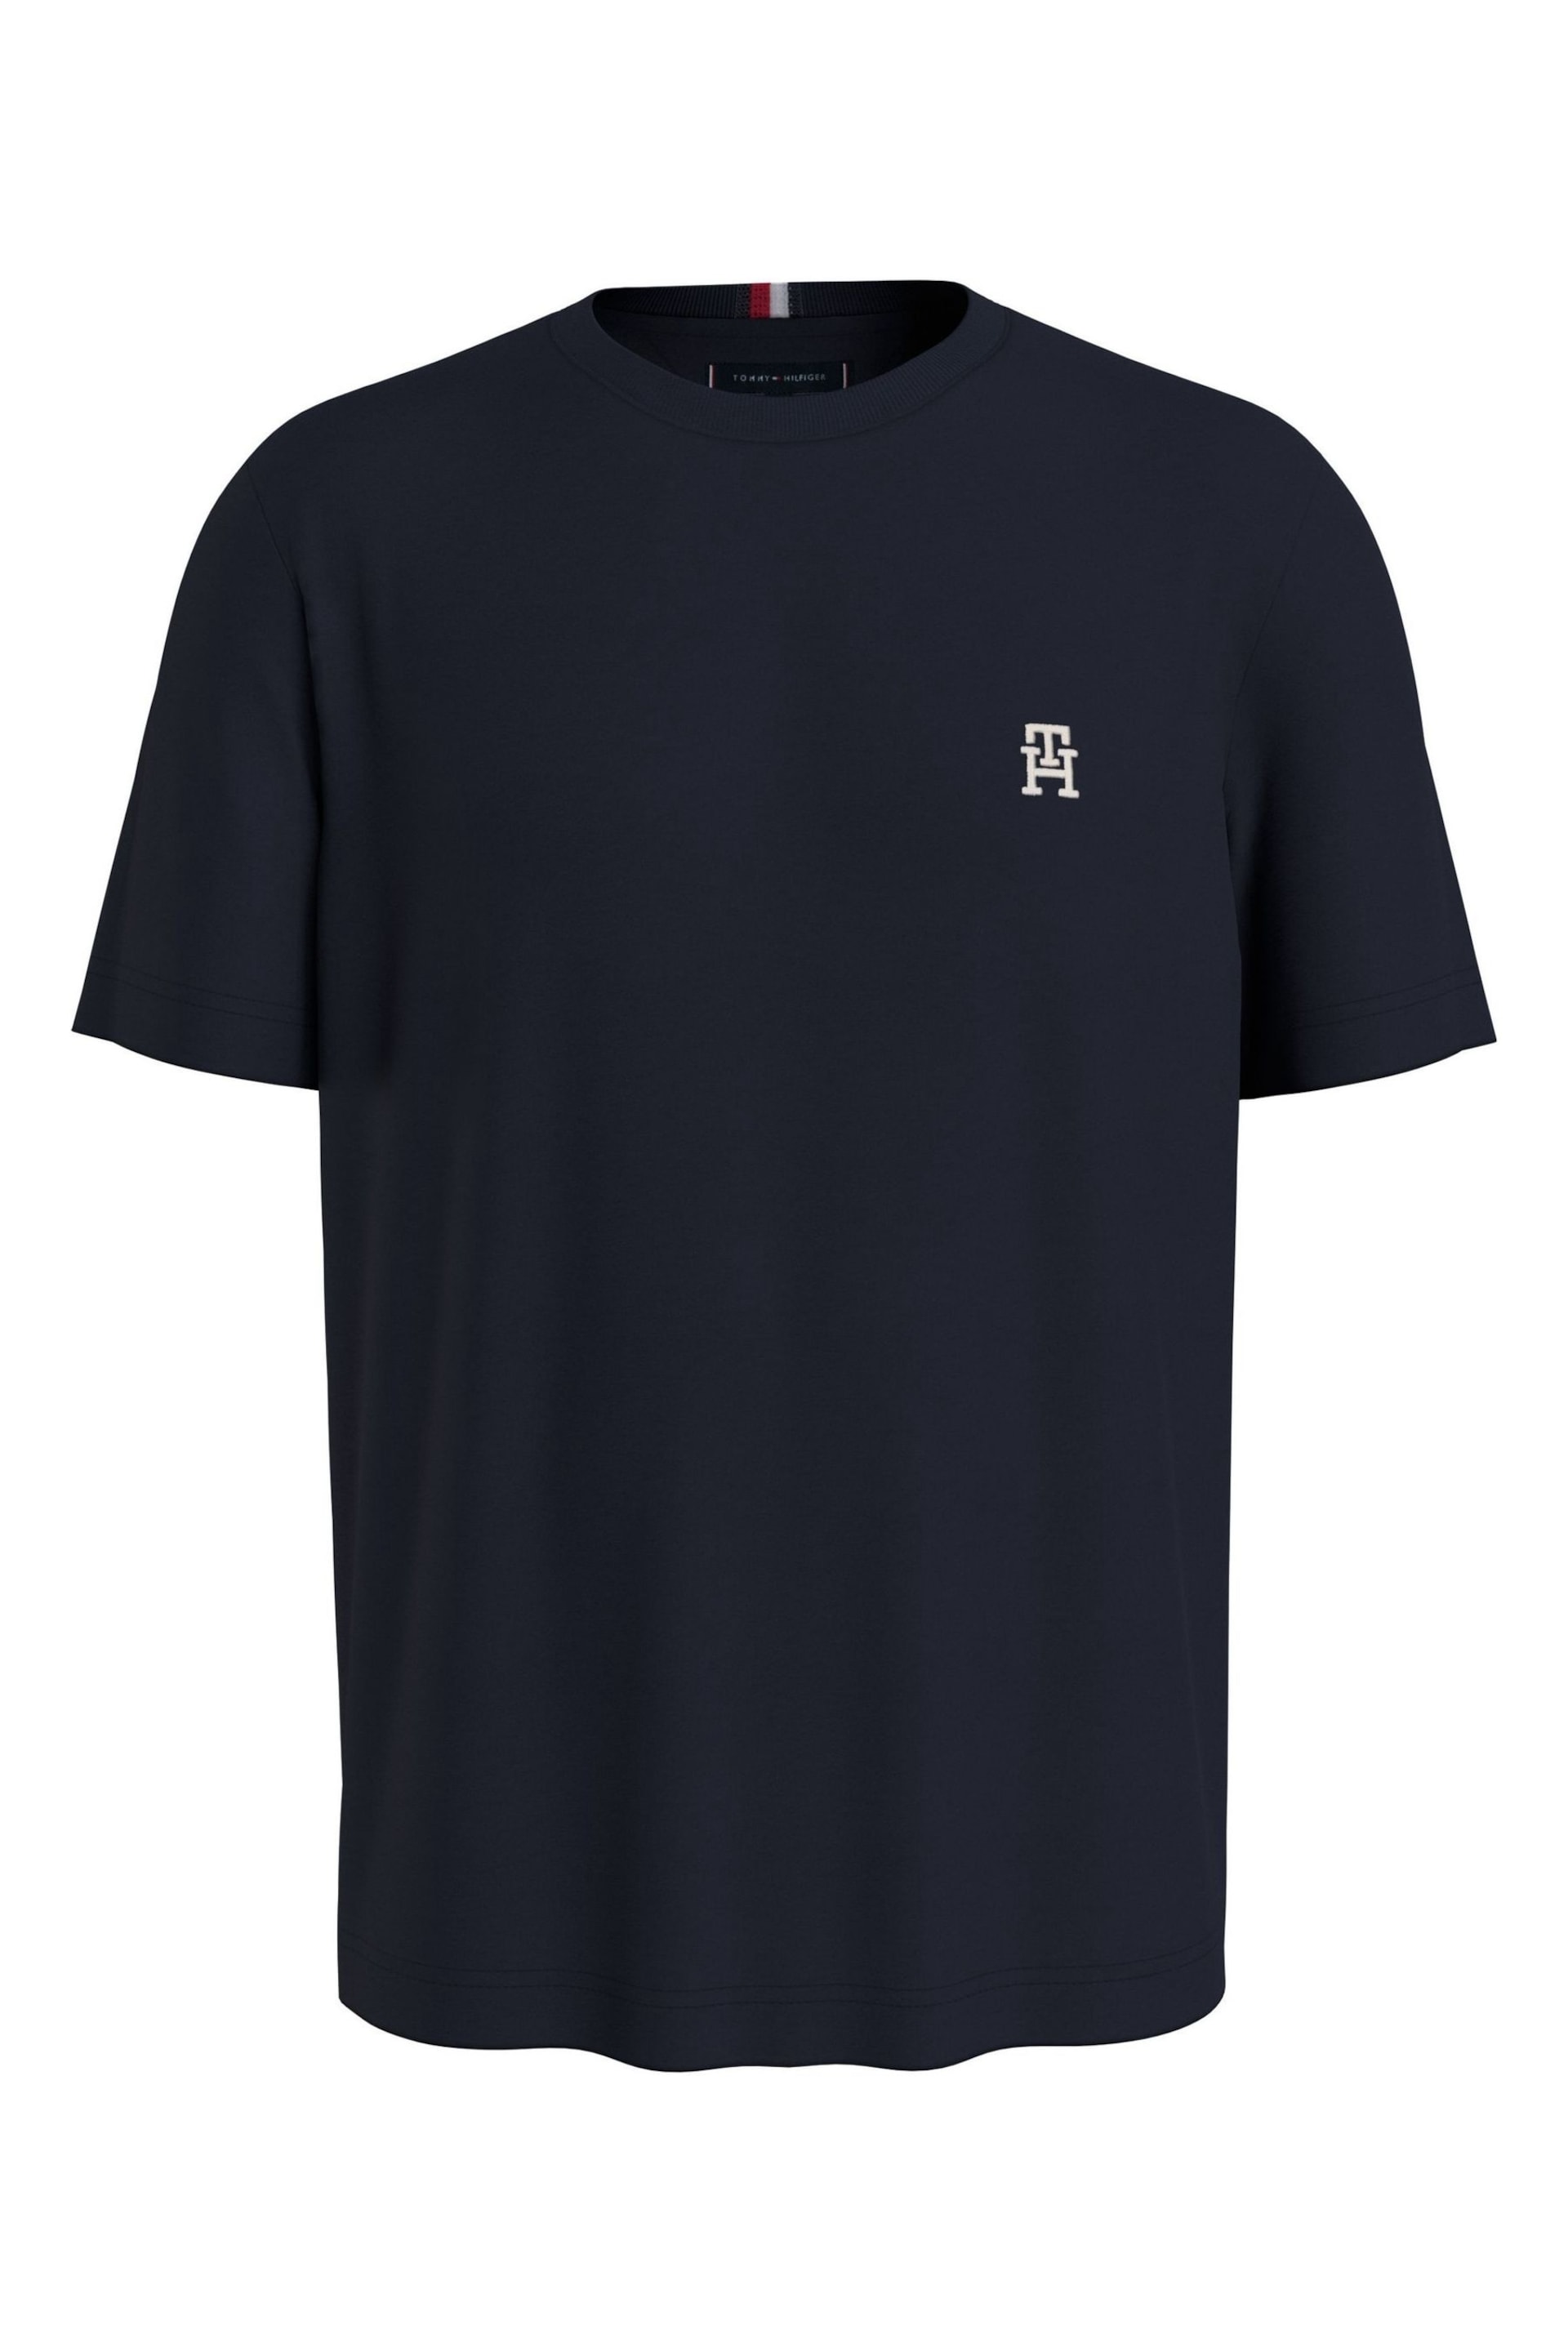 Tommy Hilfiger Blue Monogram T-Shirt - Image 1 of 2